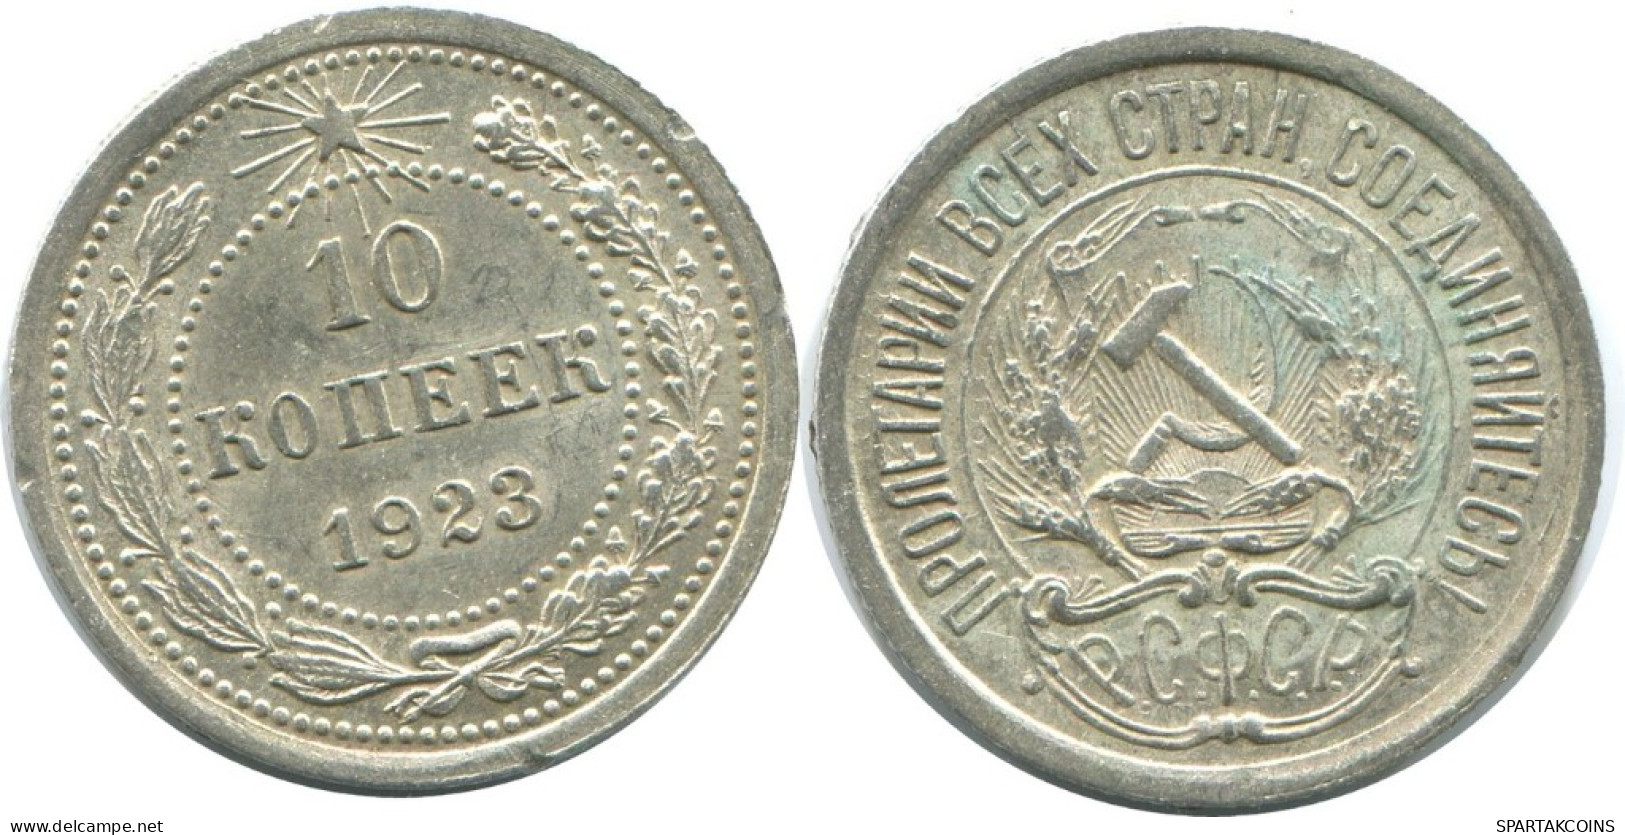 10 KOPEKS 1923 RUSSLAND RUSSIA RSFSR SILBER Münze HIGH GRADE #AE978.4.D.A - Russland